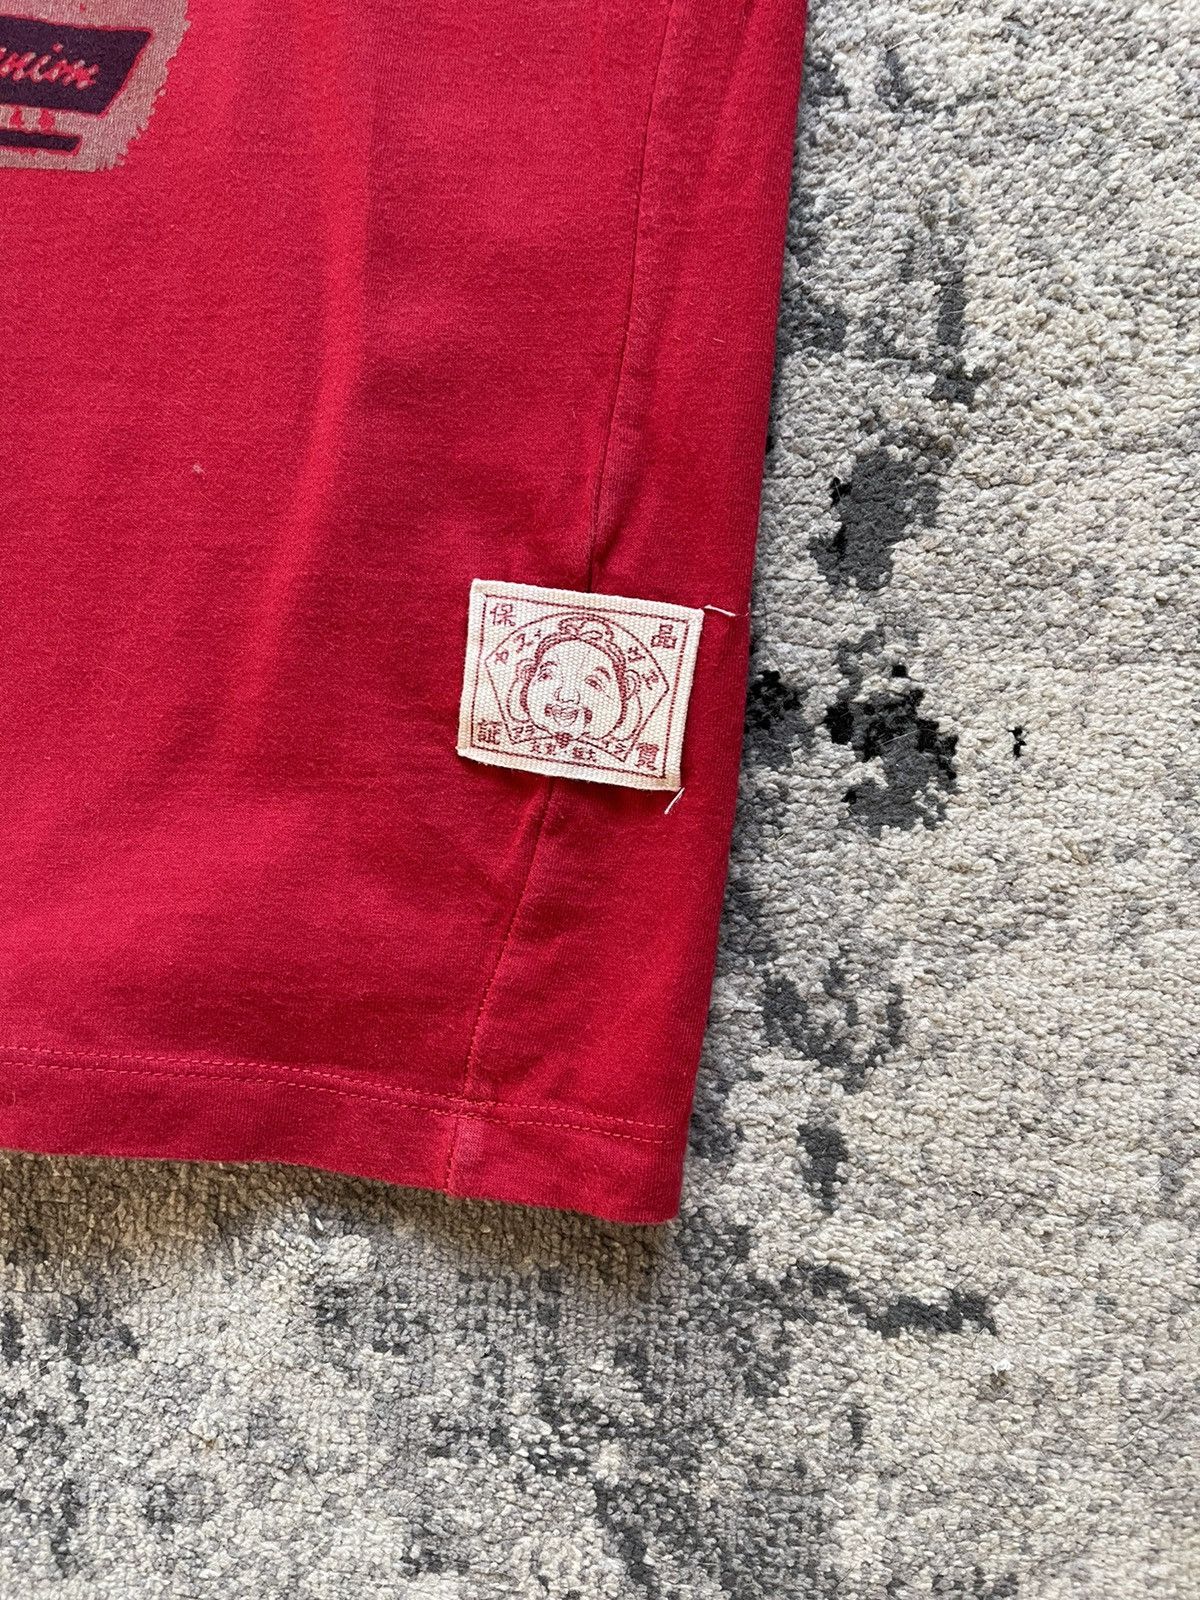 Evisu Evisu T-Shirt red S Size US S / EU 44-46 / 1 - 3 Thumbnail